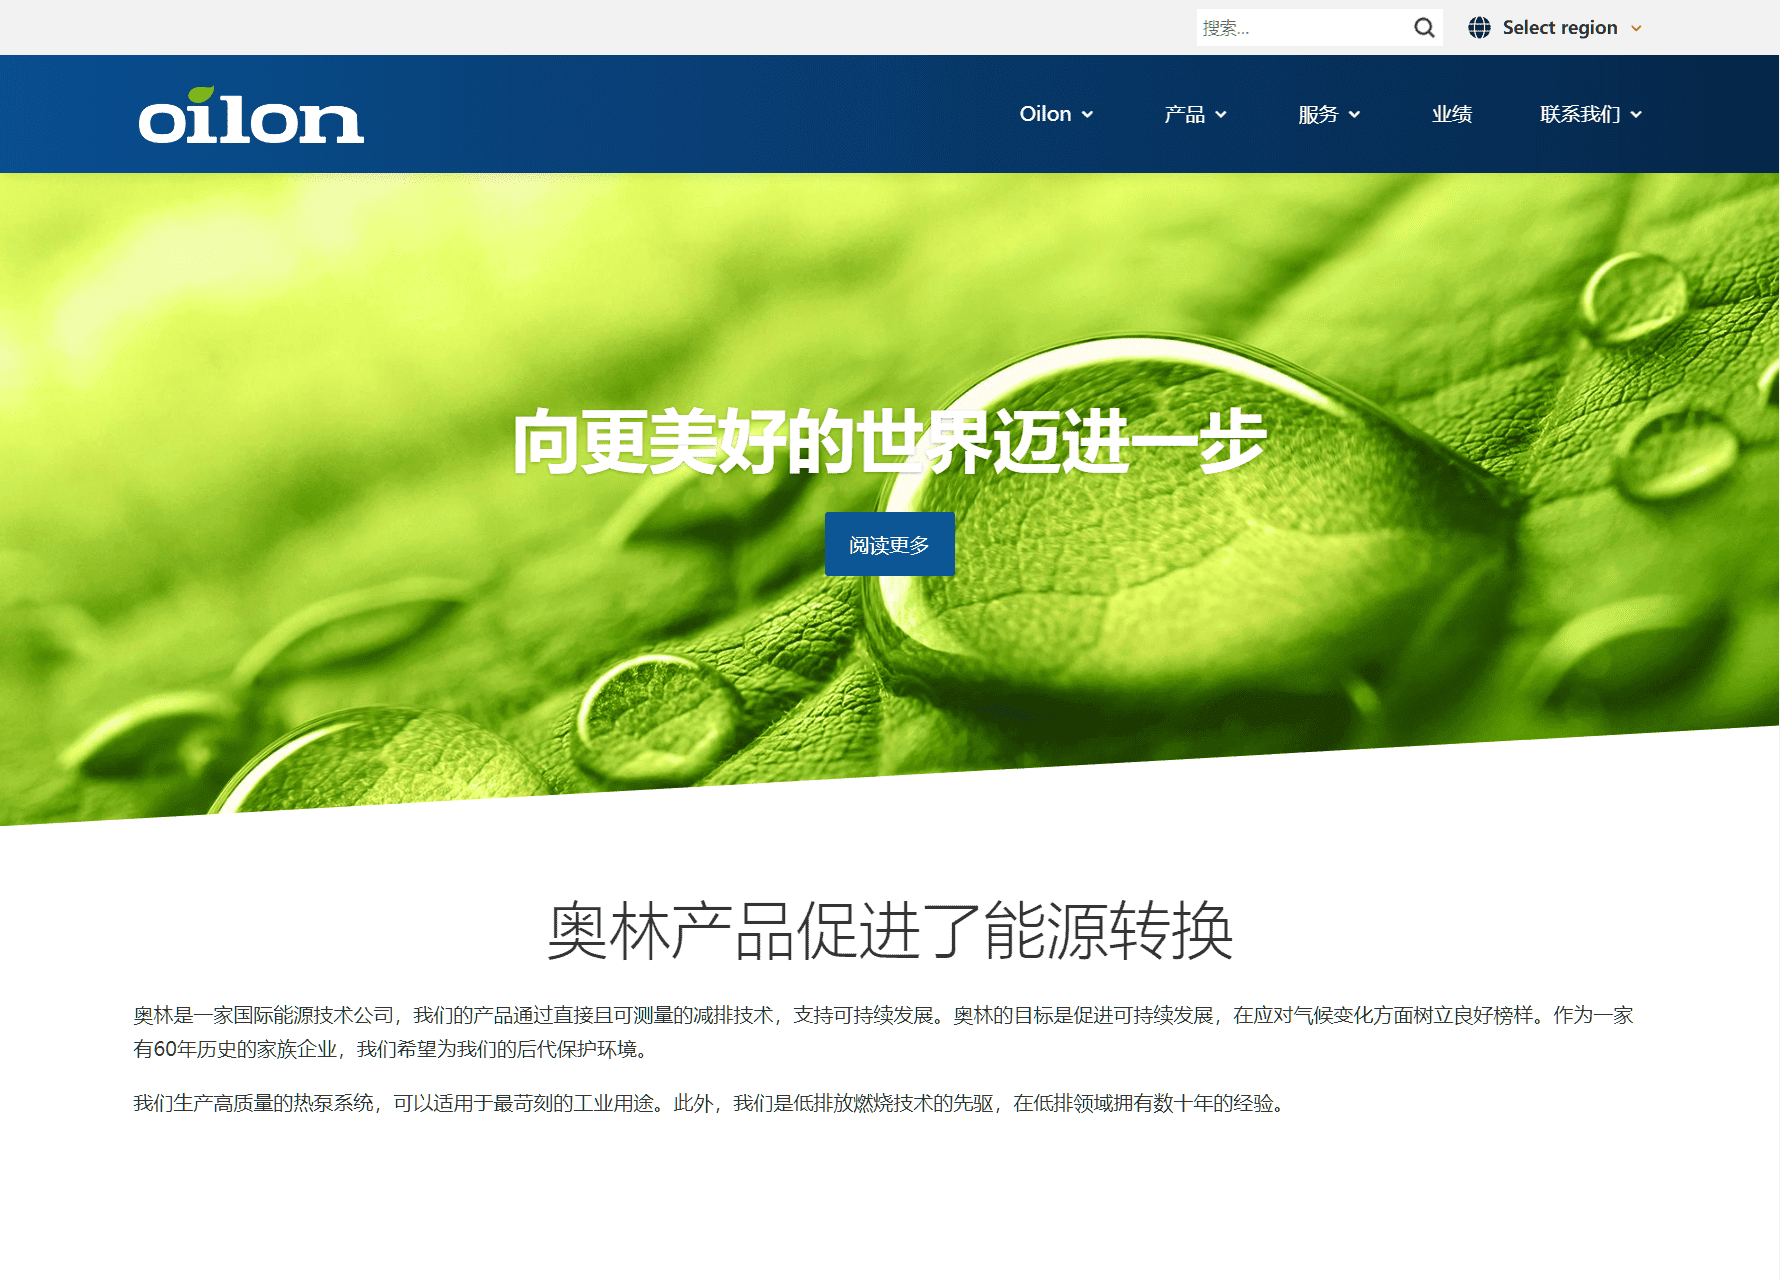 screenshot af oilons kinesiske hjemmeside